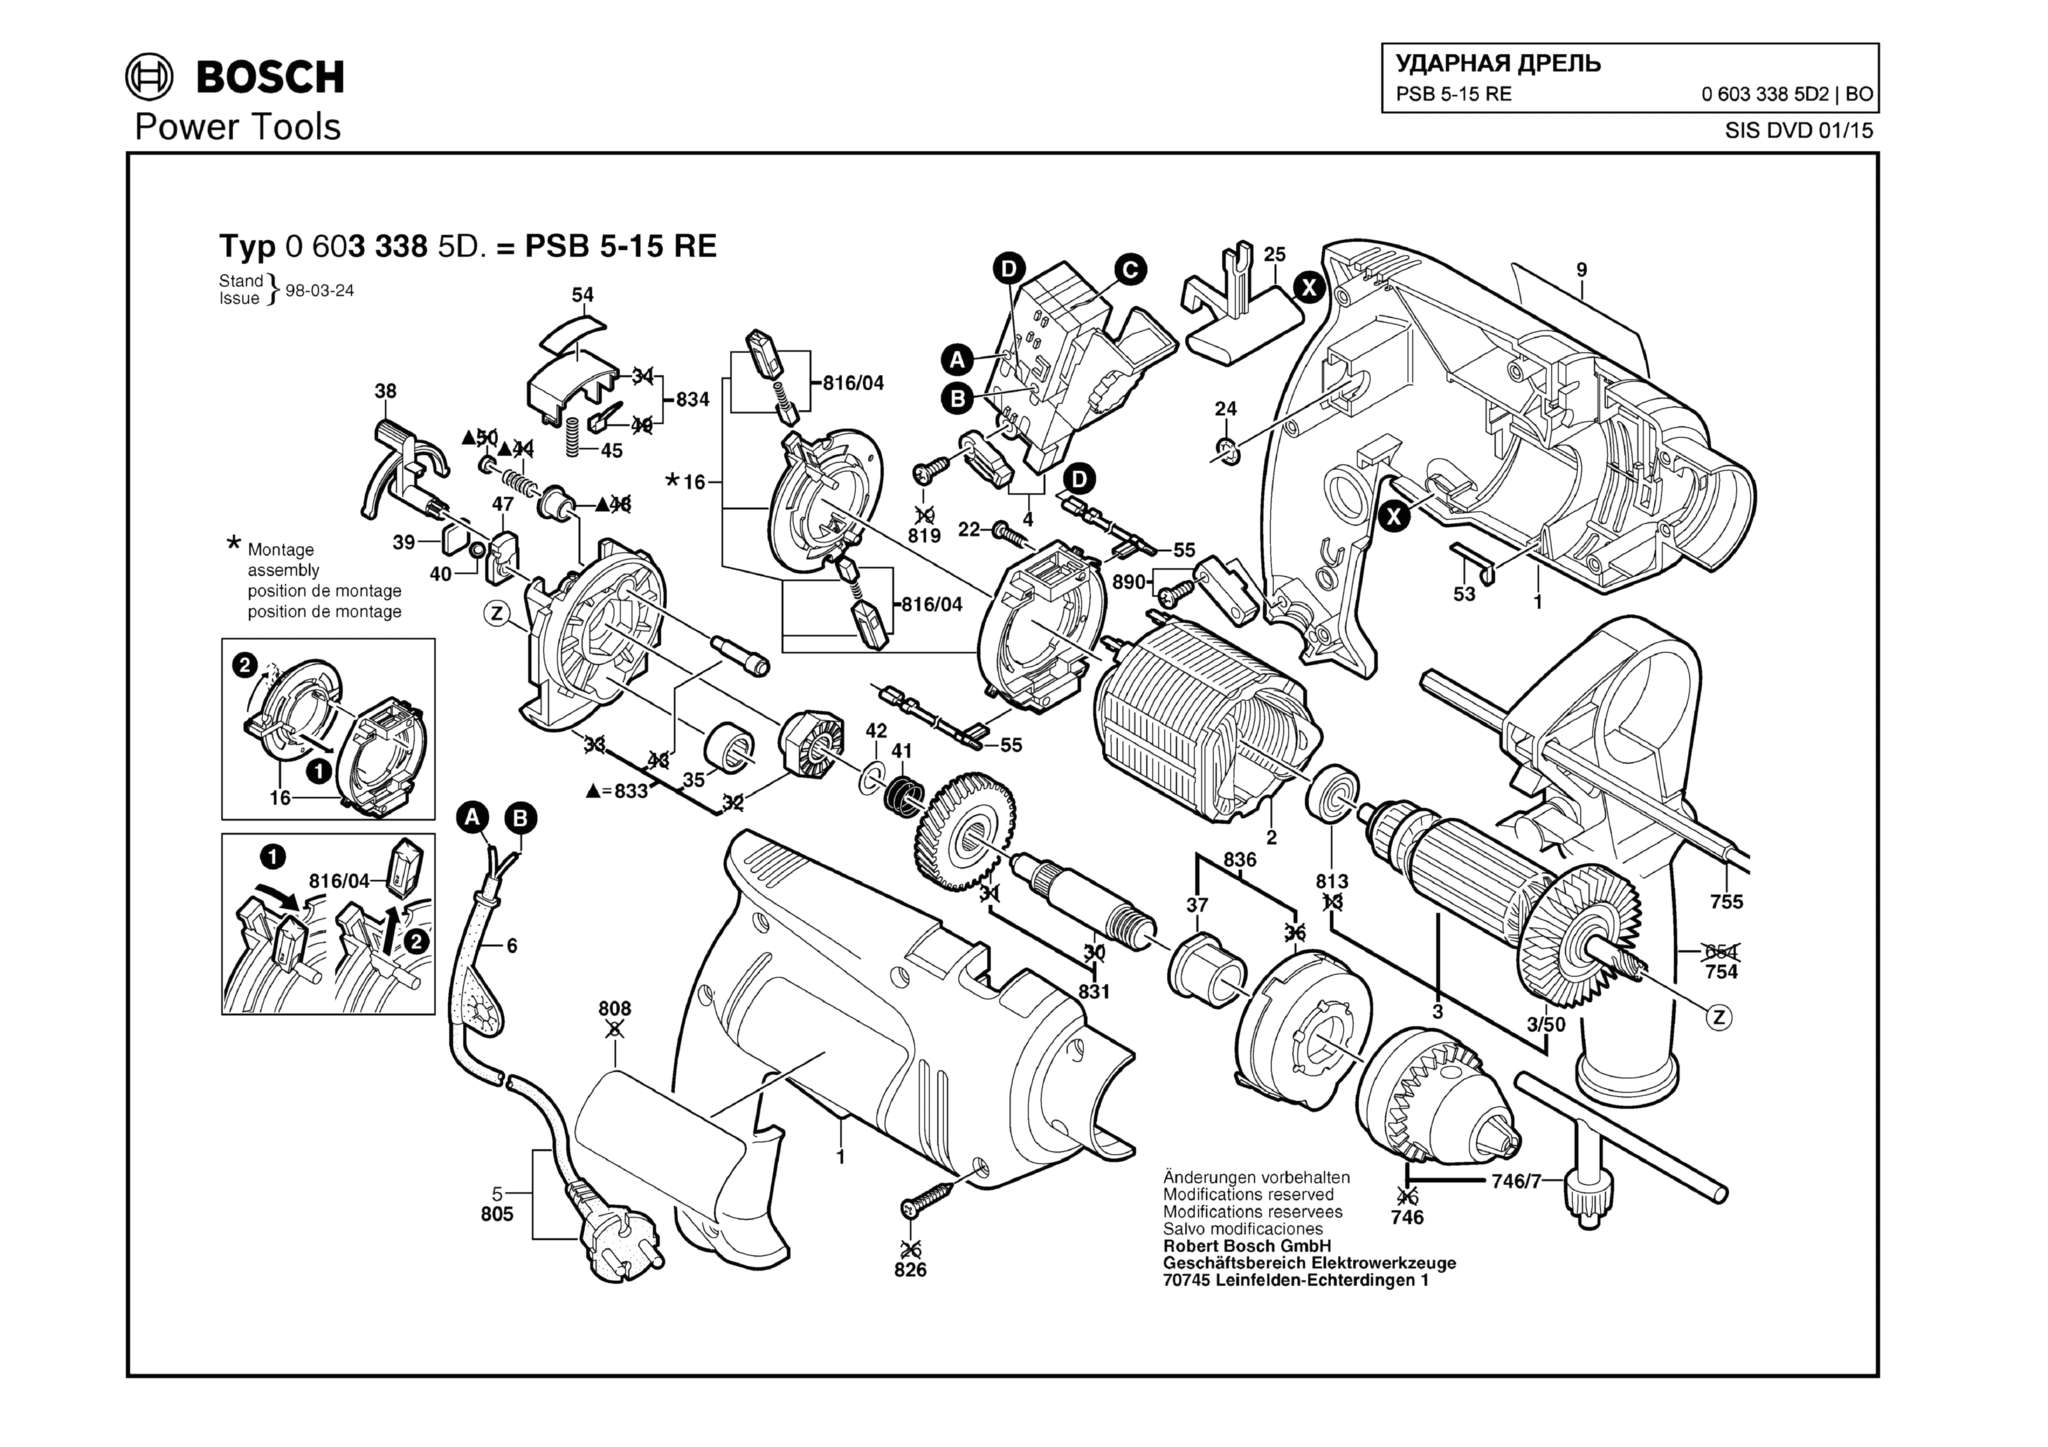 Запчасти, схема и деталировка Bosch PSB 5-15 RE (ТИП 06033385D2)